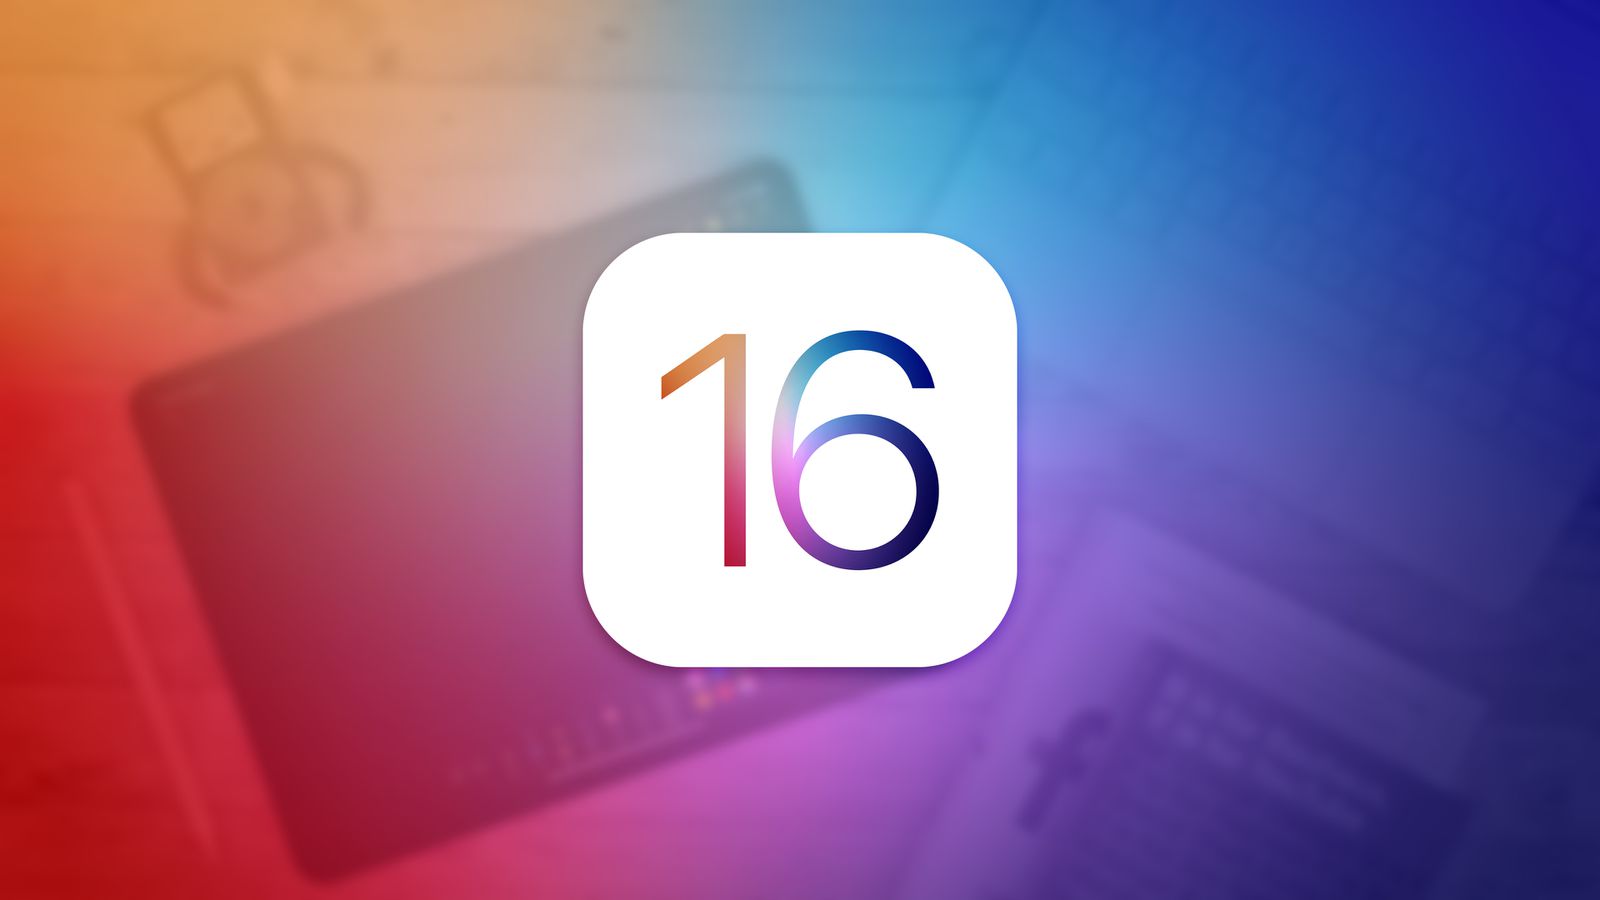 نظام iOS 16 يتضمن تحسينات "مهمة" على الإشعارات ، وميزات جديدة لتتبع الصحة